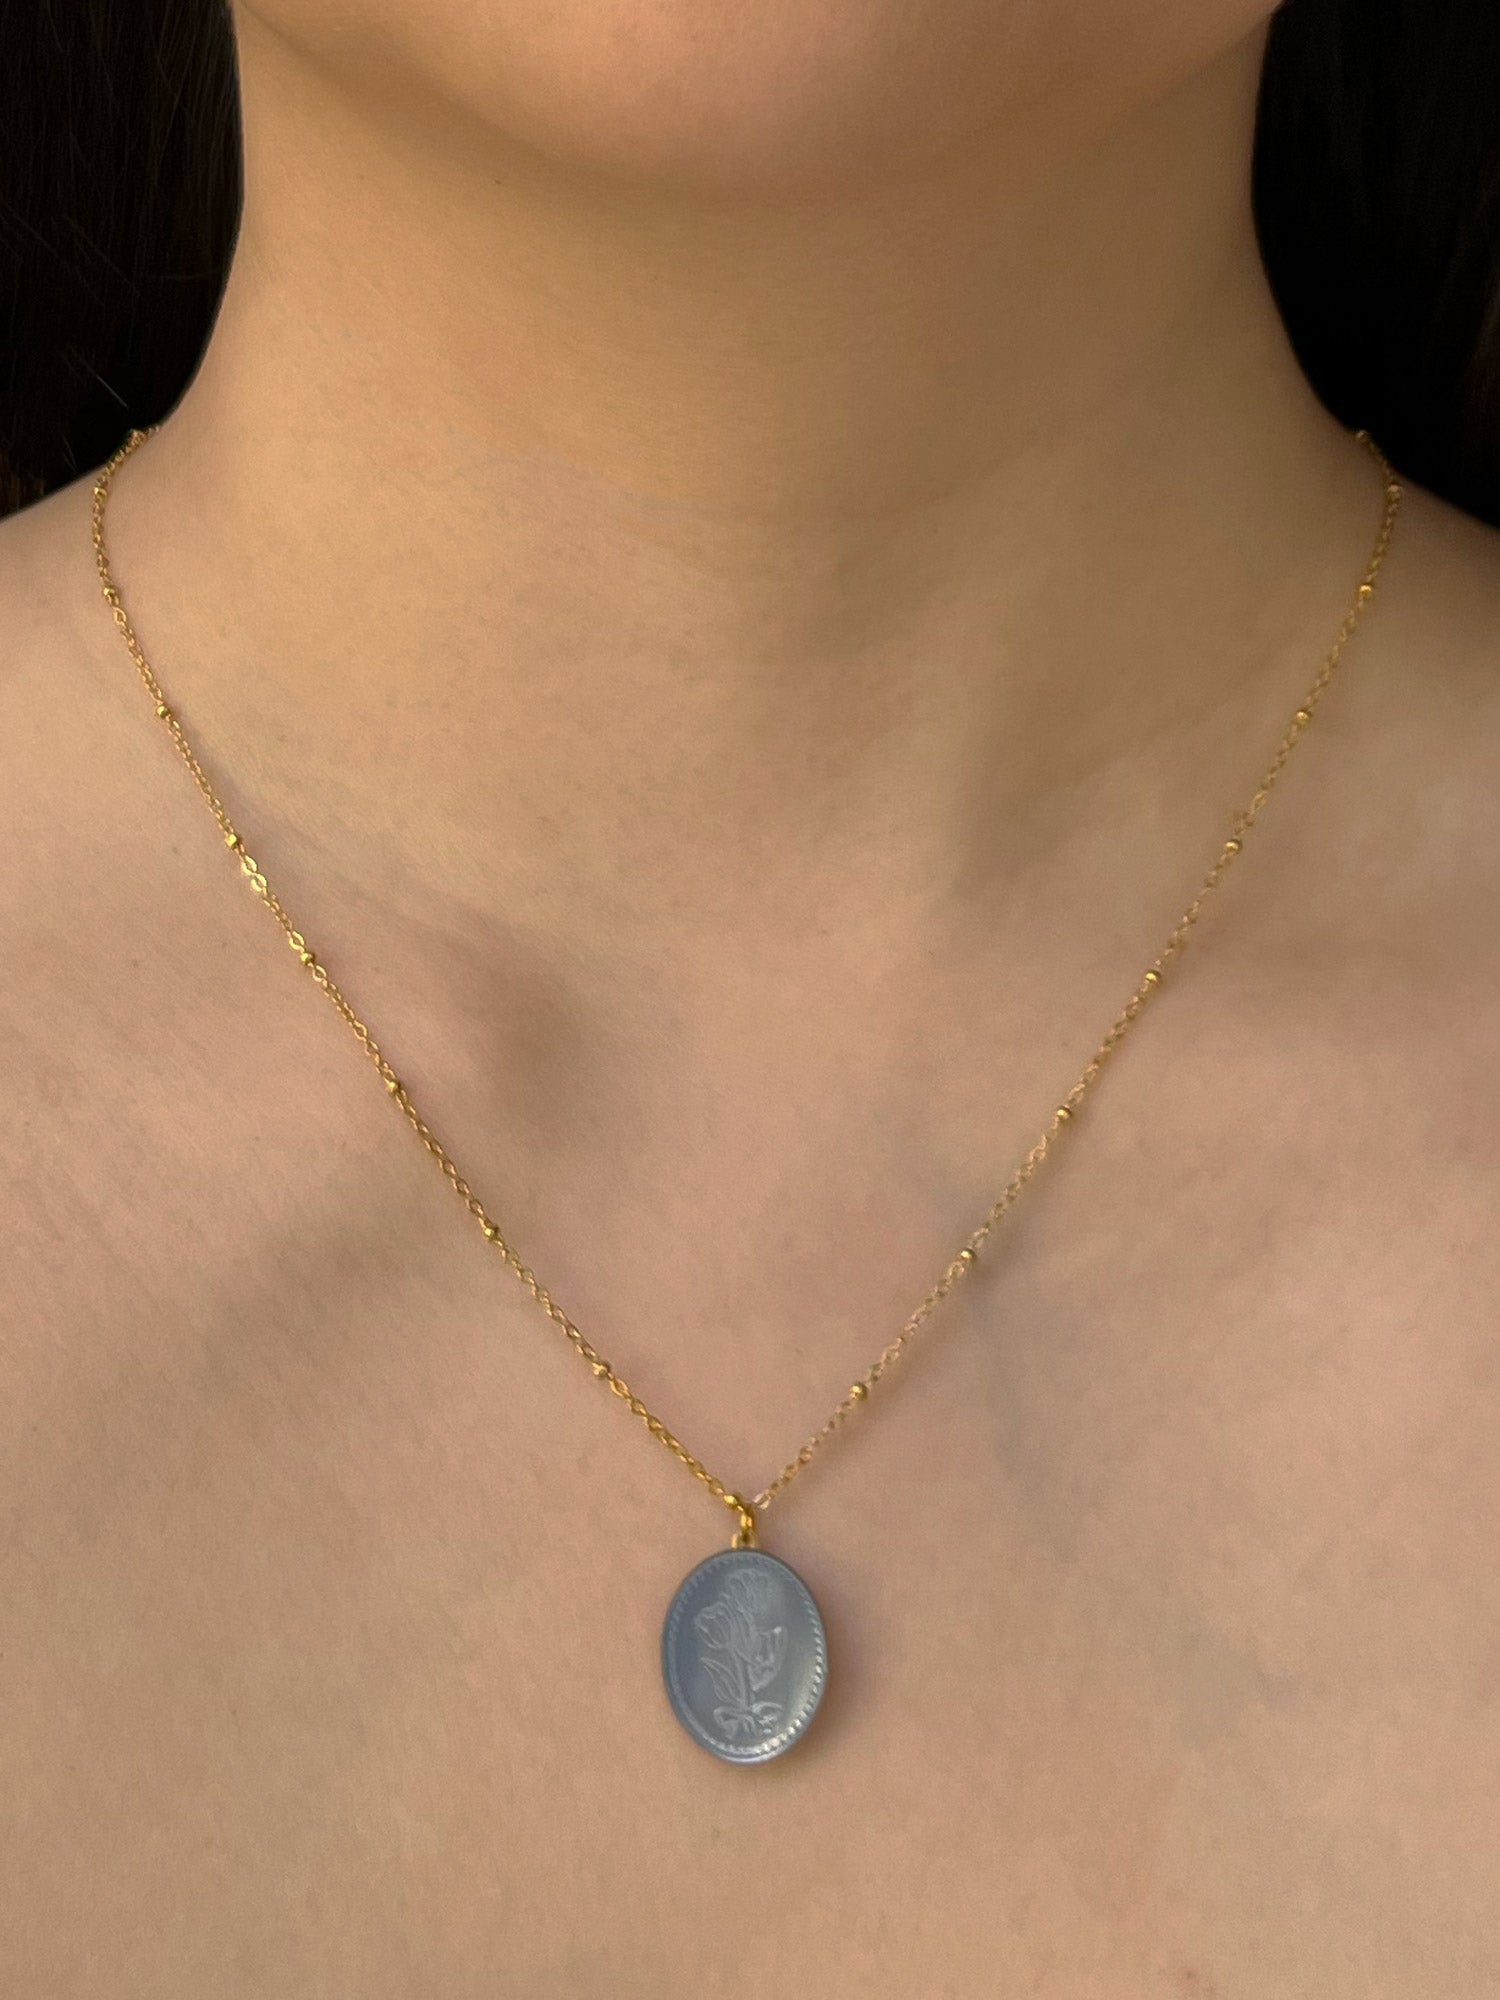 Grand Collier Pendentif Perle avec Fleurs Sculptées - Bleu